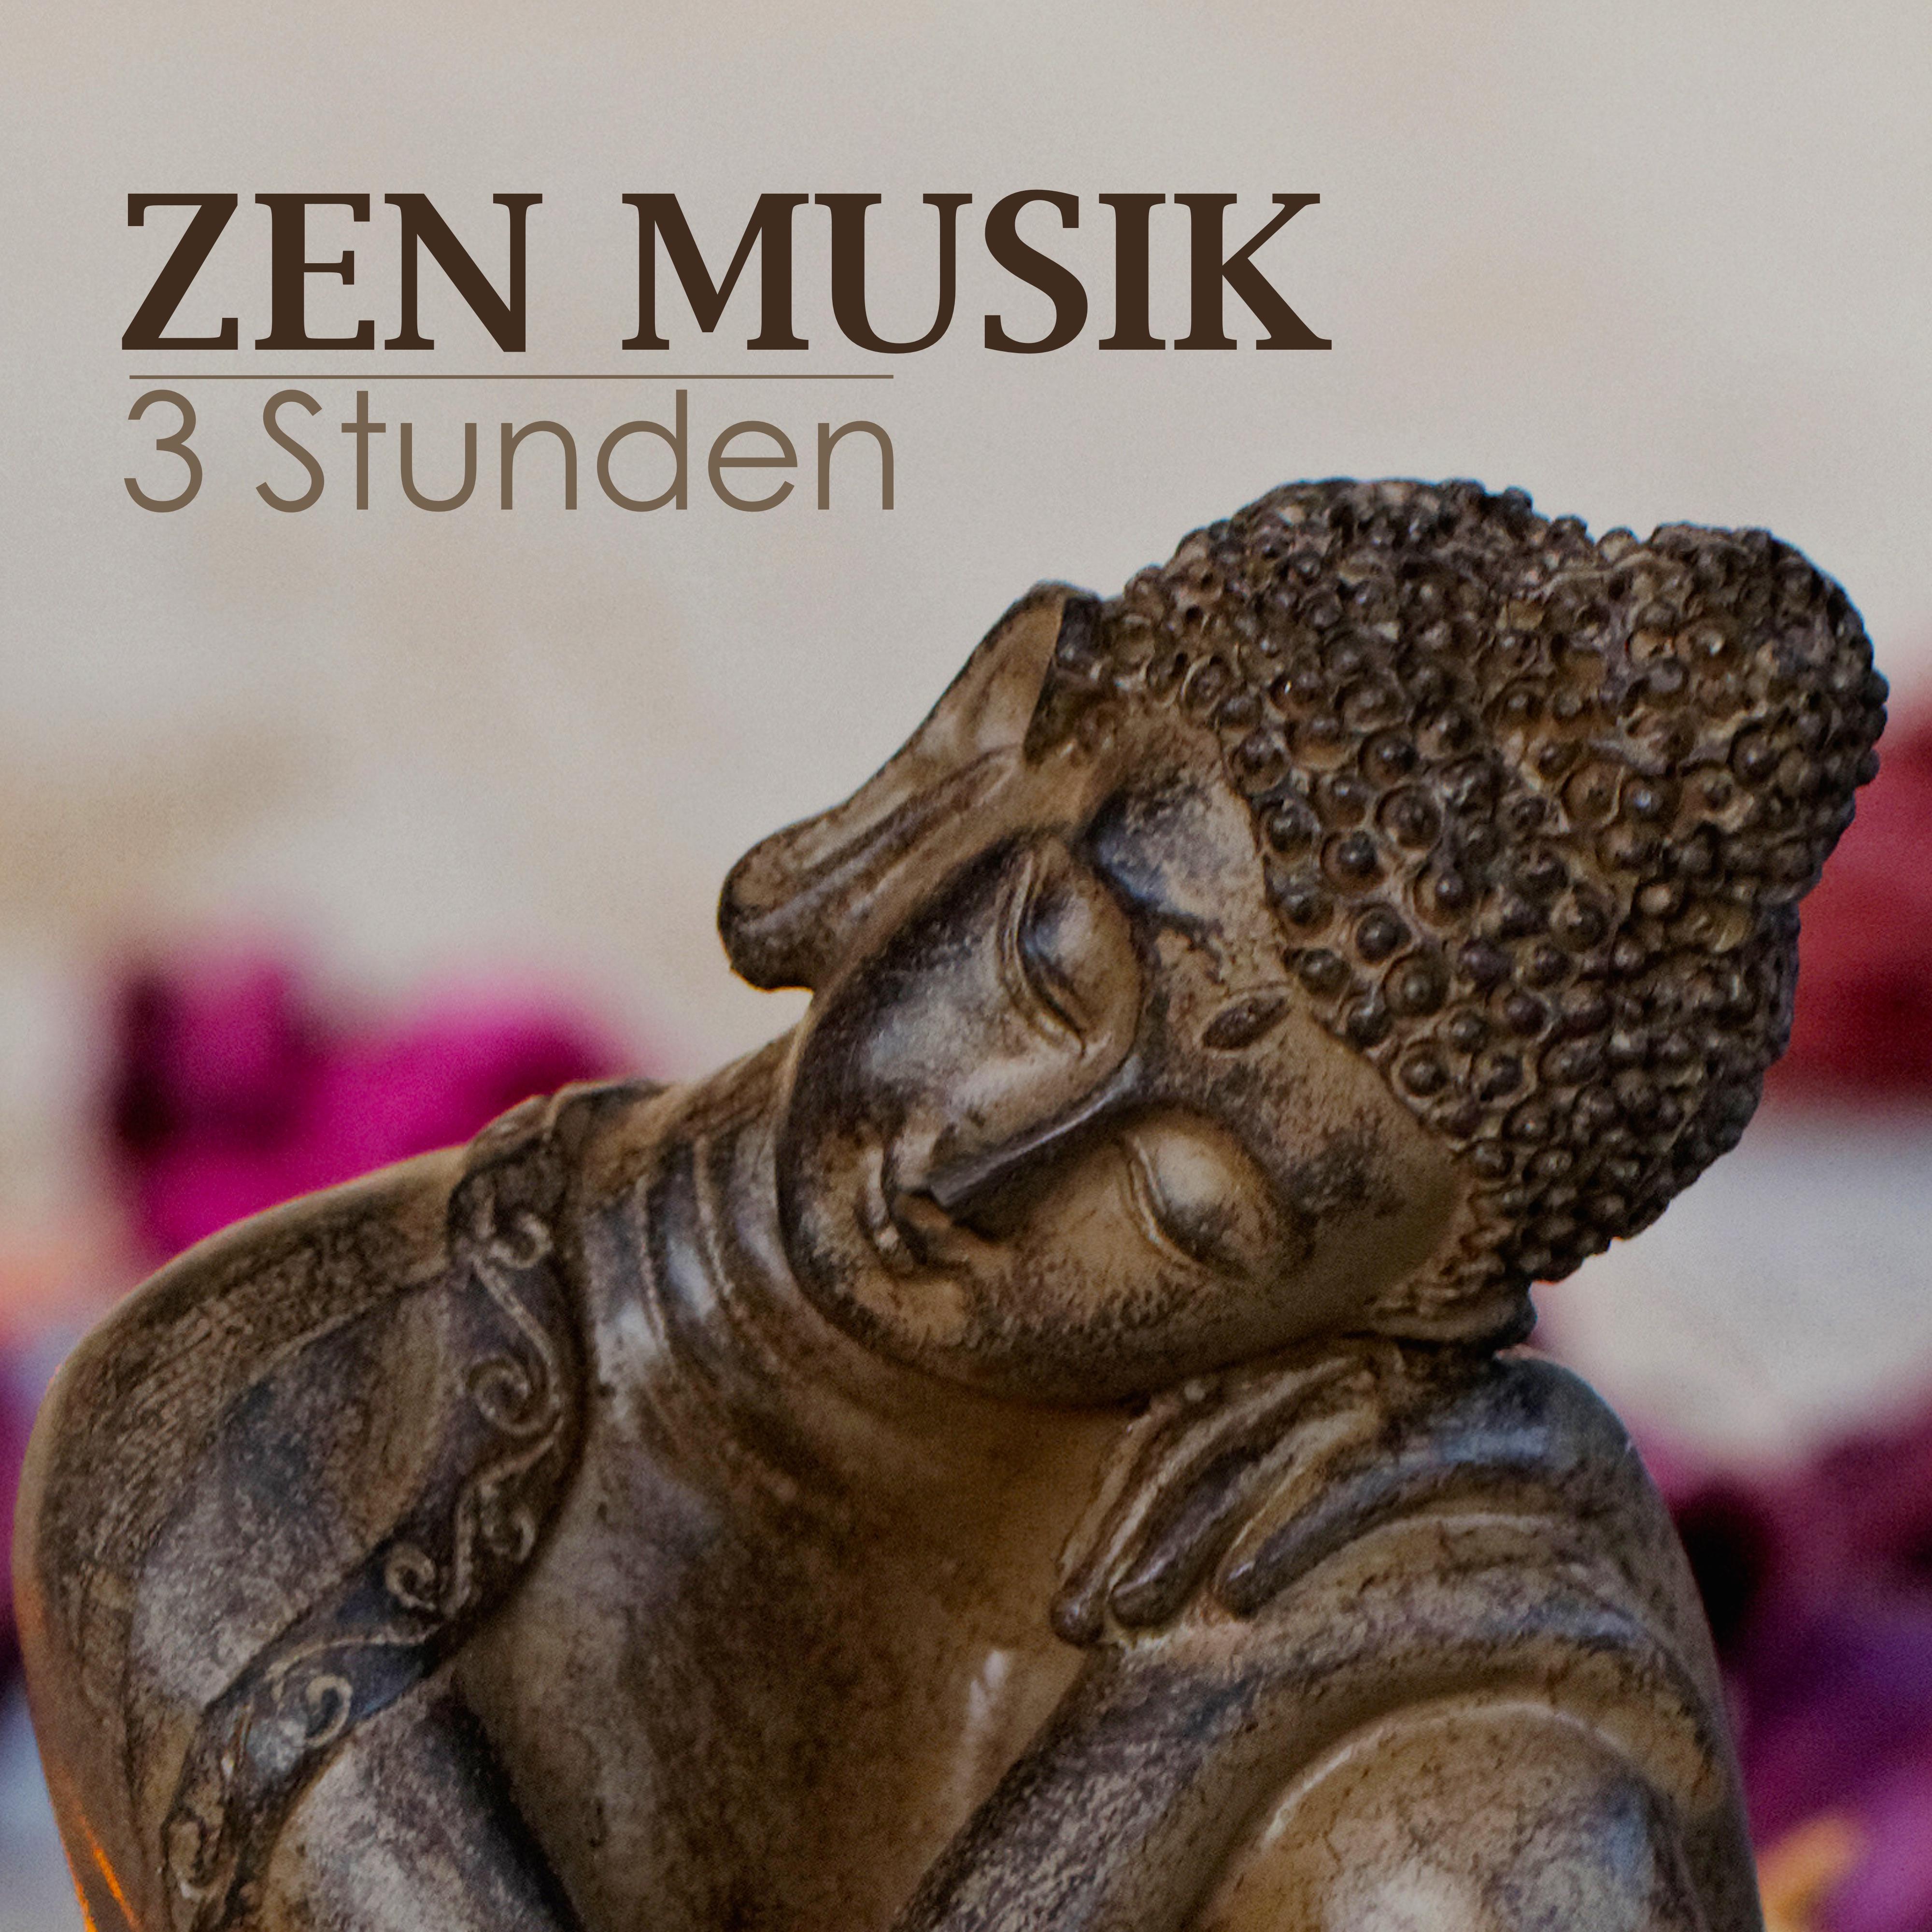 Zen Musik mit Tibetanischen Klangschalen